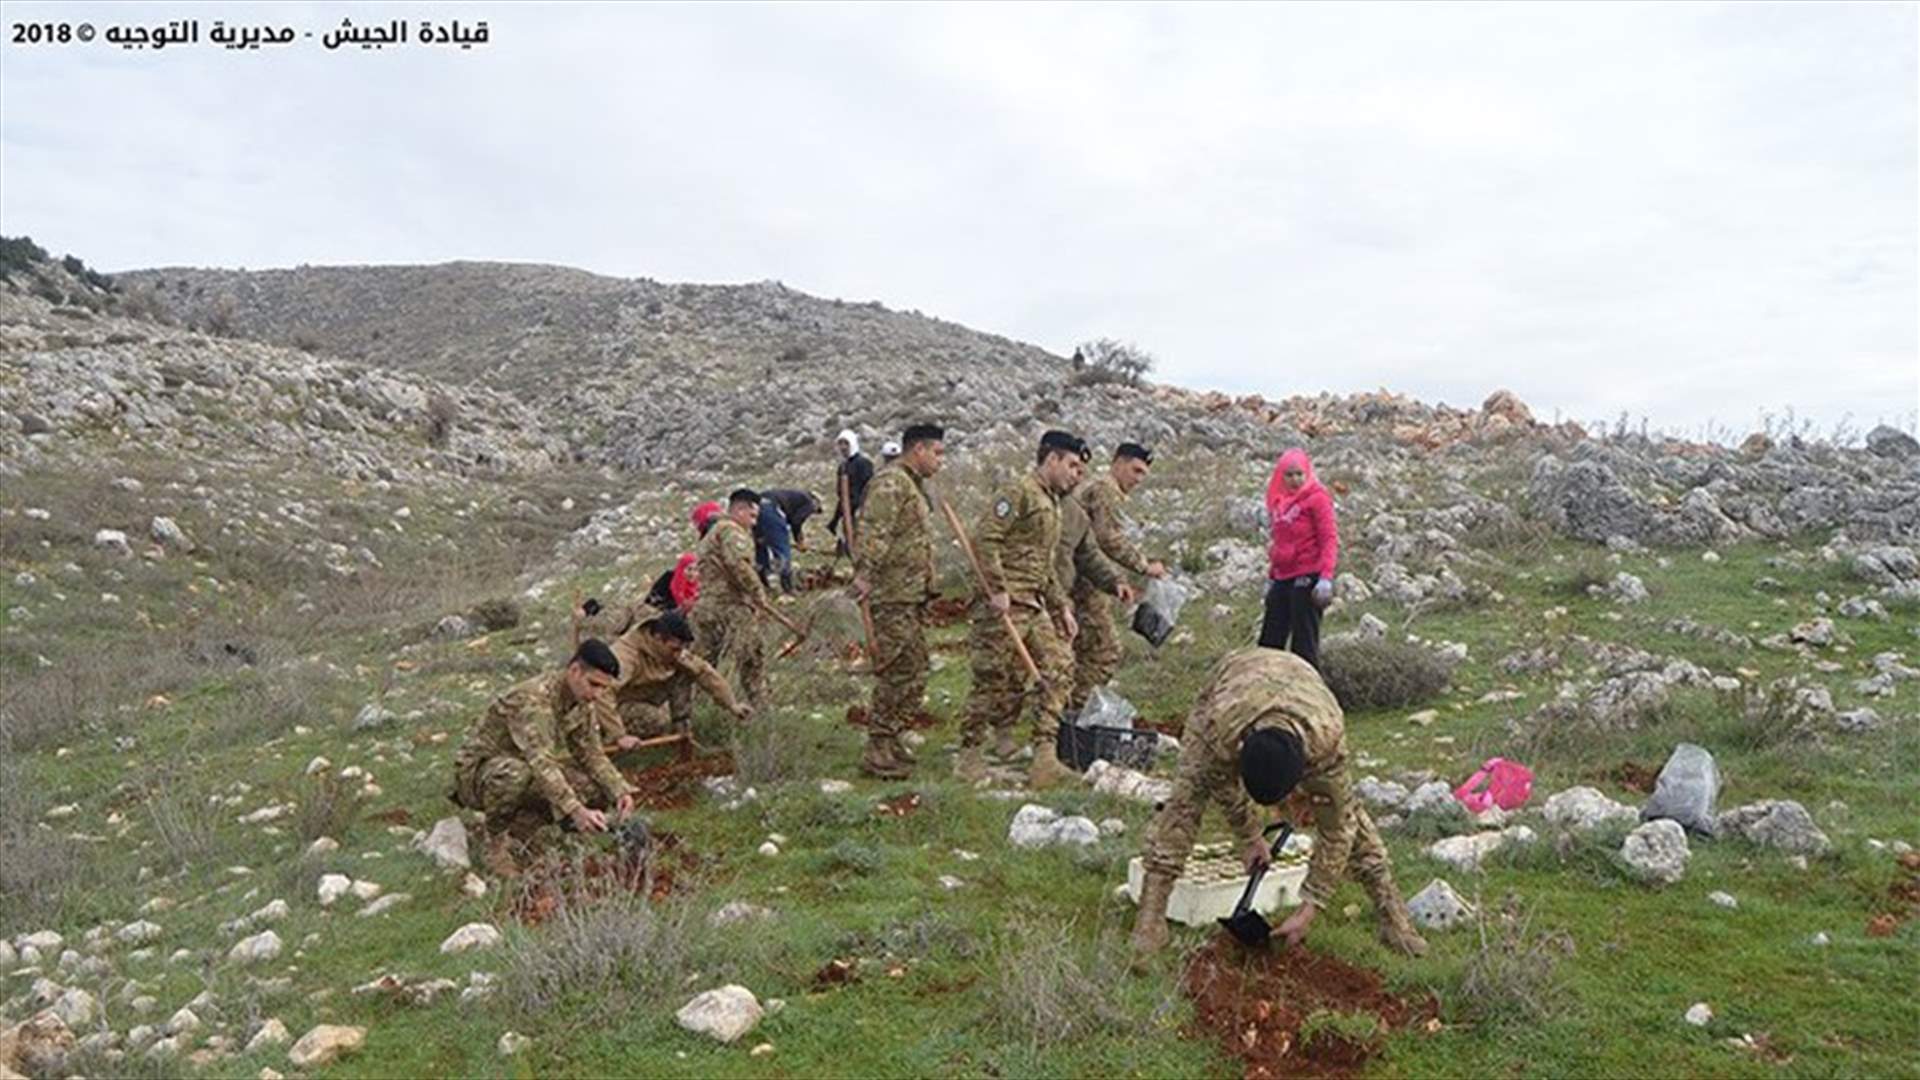 بالصور- غرس نحو 5000 شتلة في مناطق لبنانية بالتعاون بين الجيش وجمعية التحريج